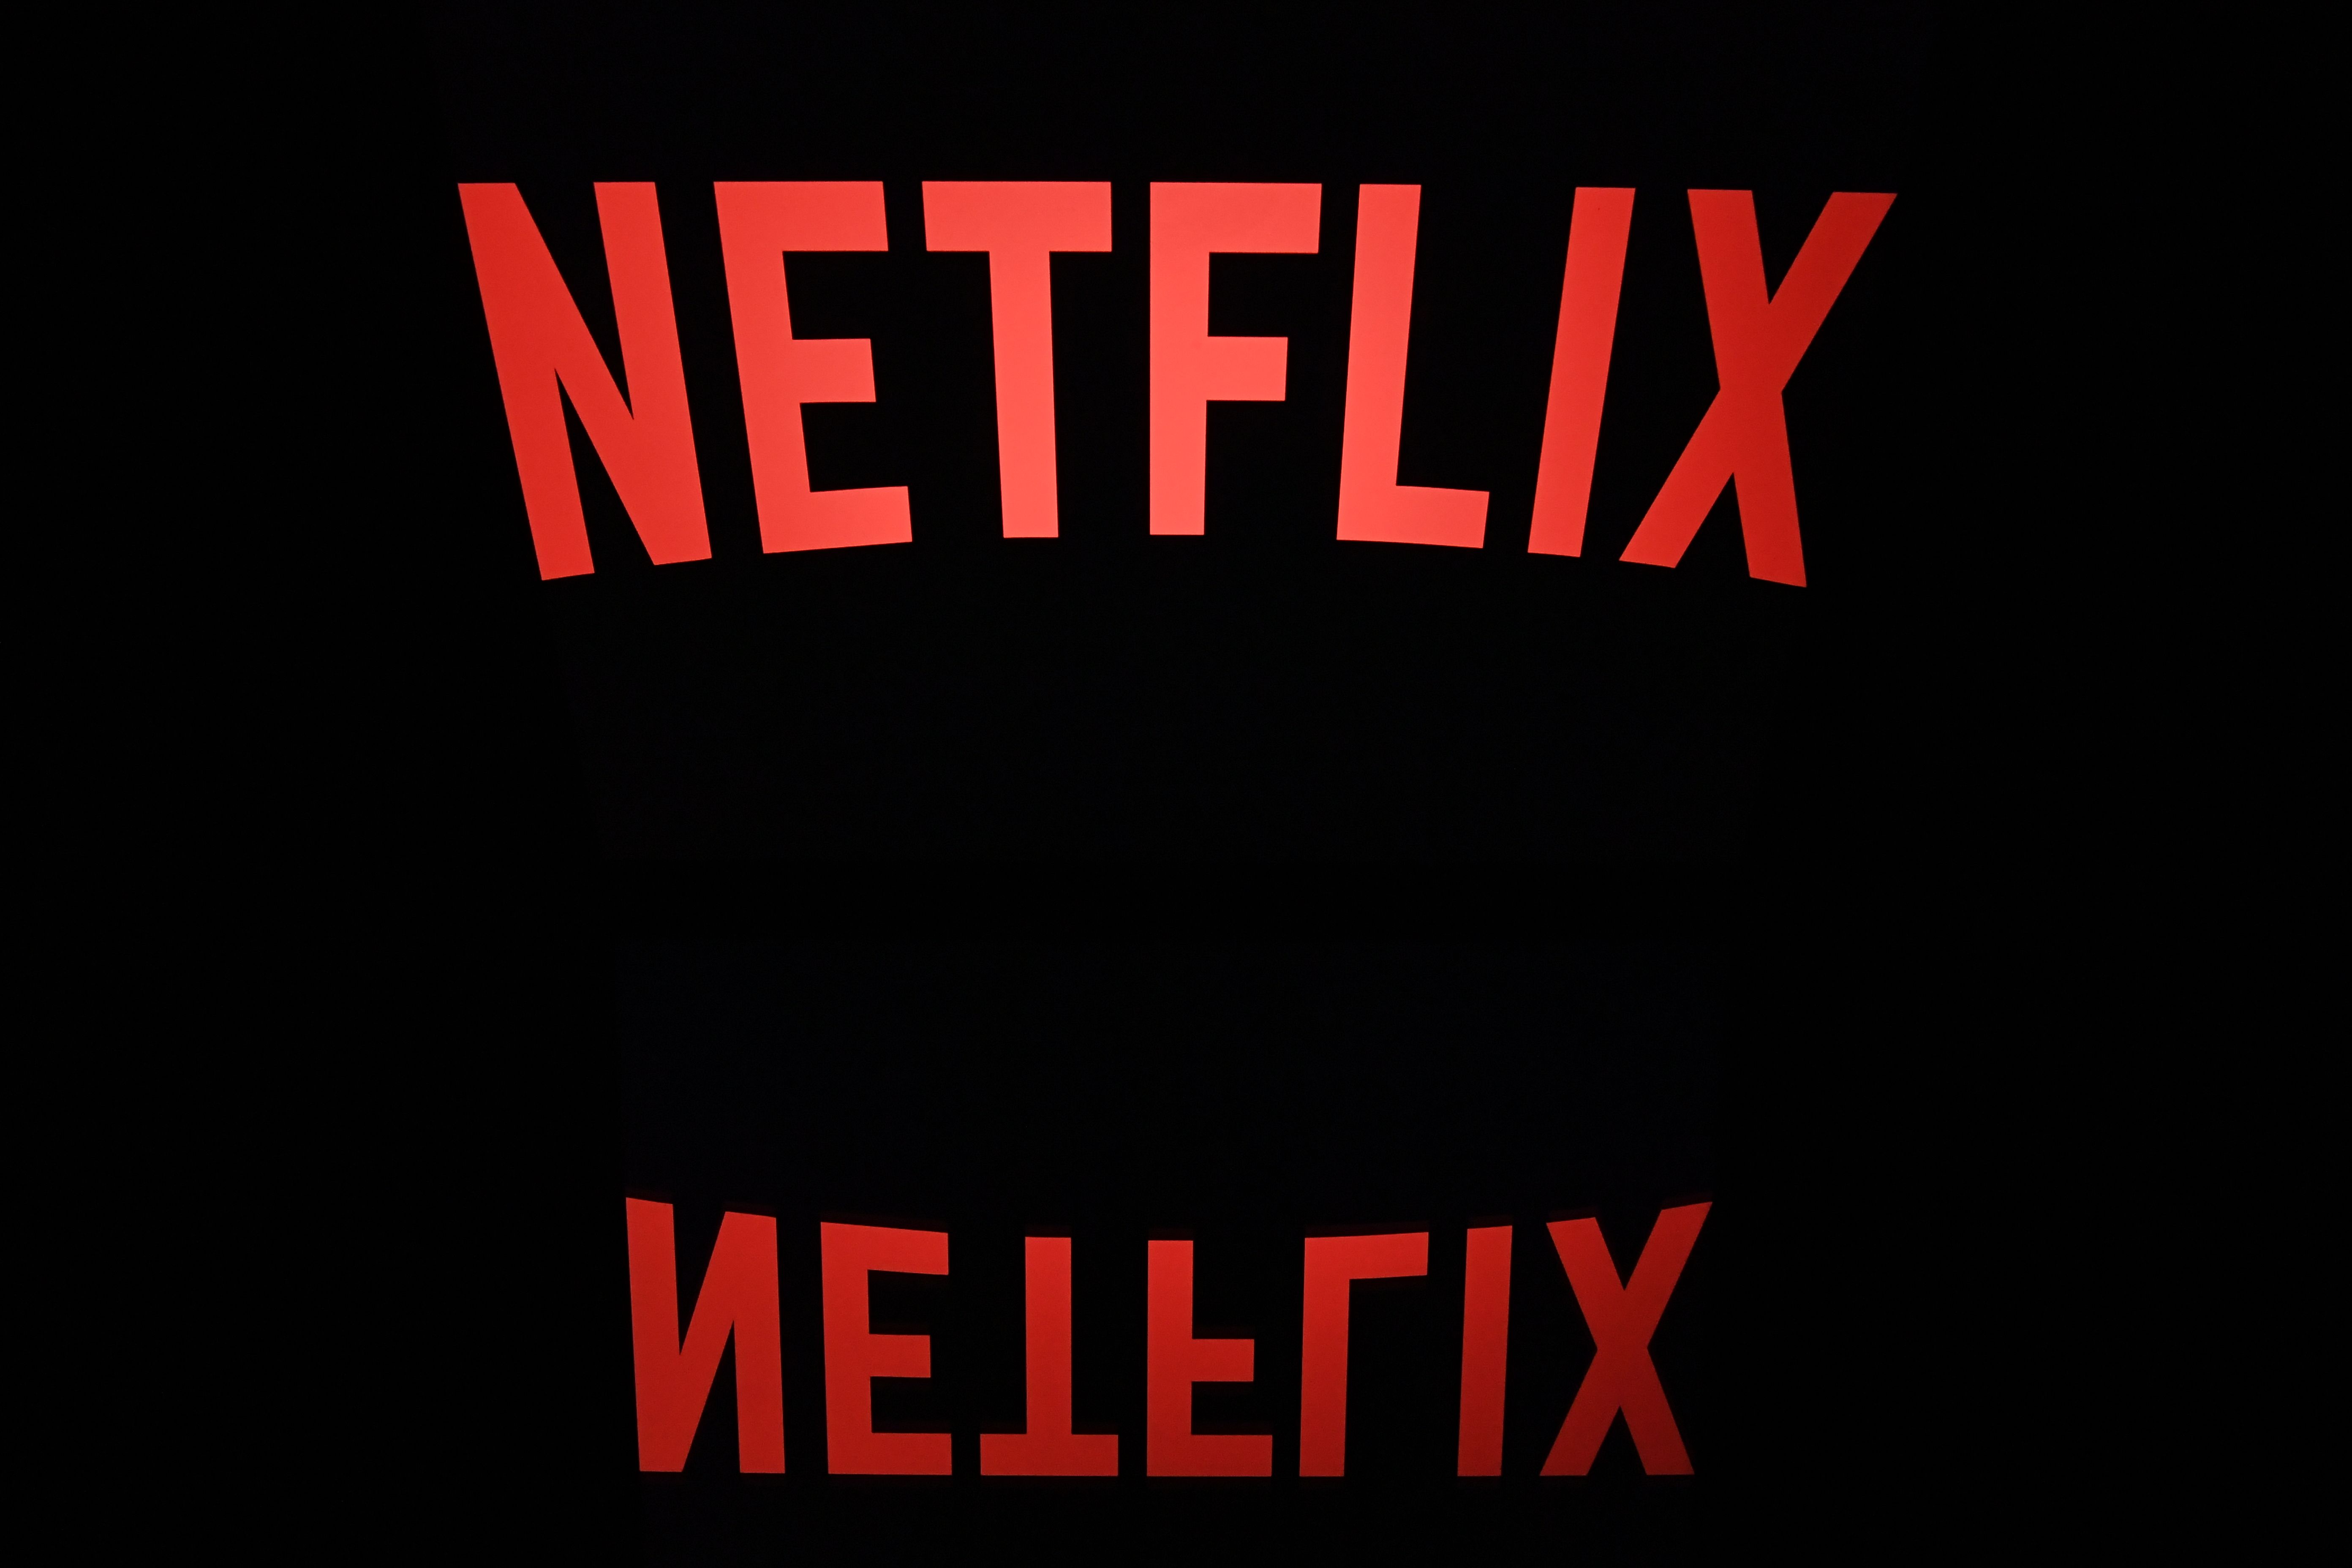 Netflix logo on tablet